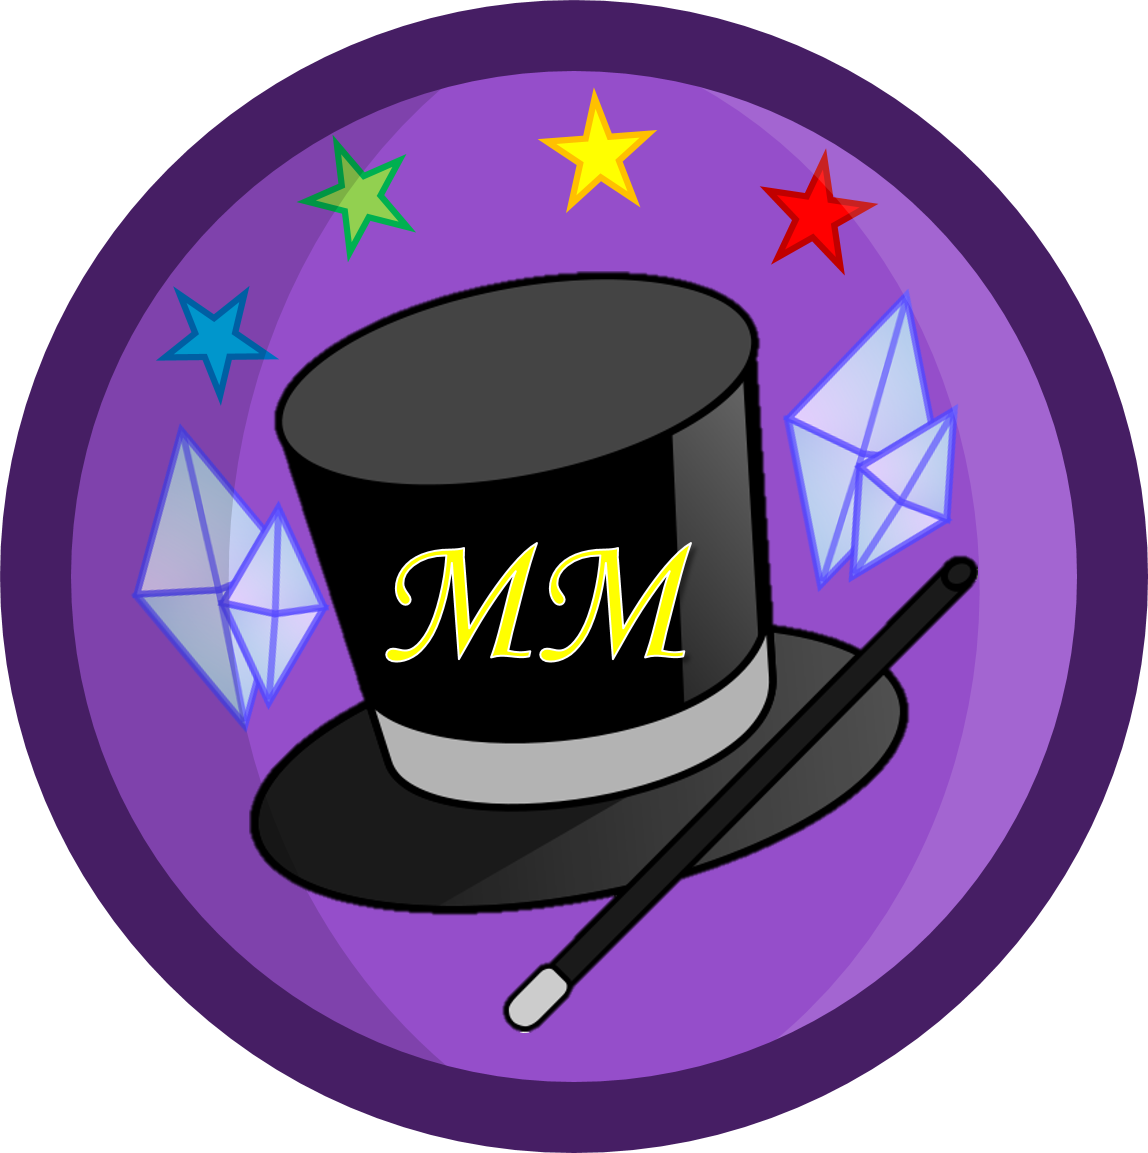 Mystifying Magicians - Mos Def True Magic (1148x1153)